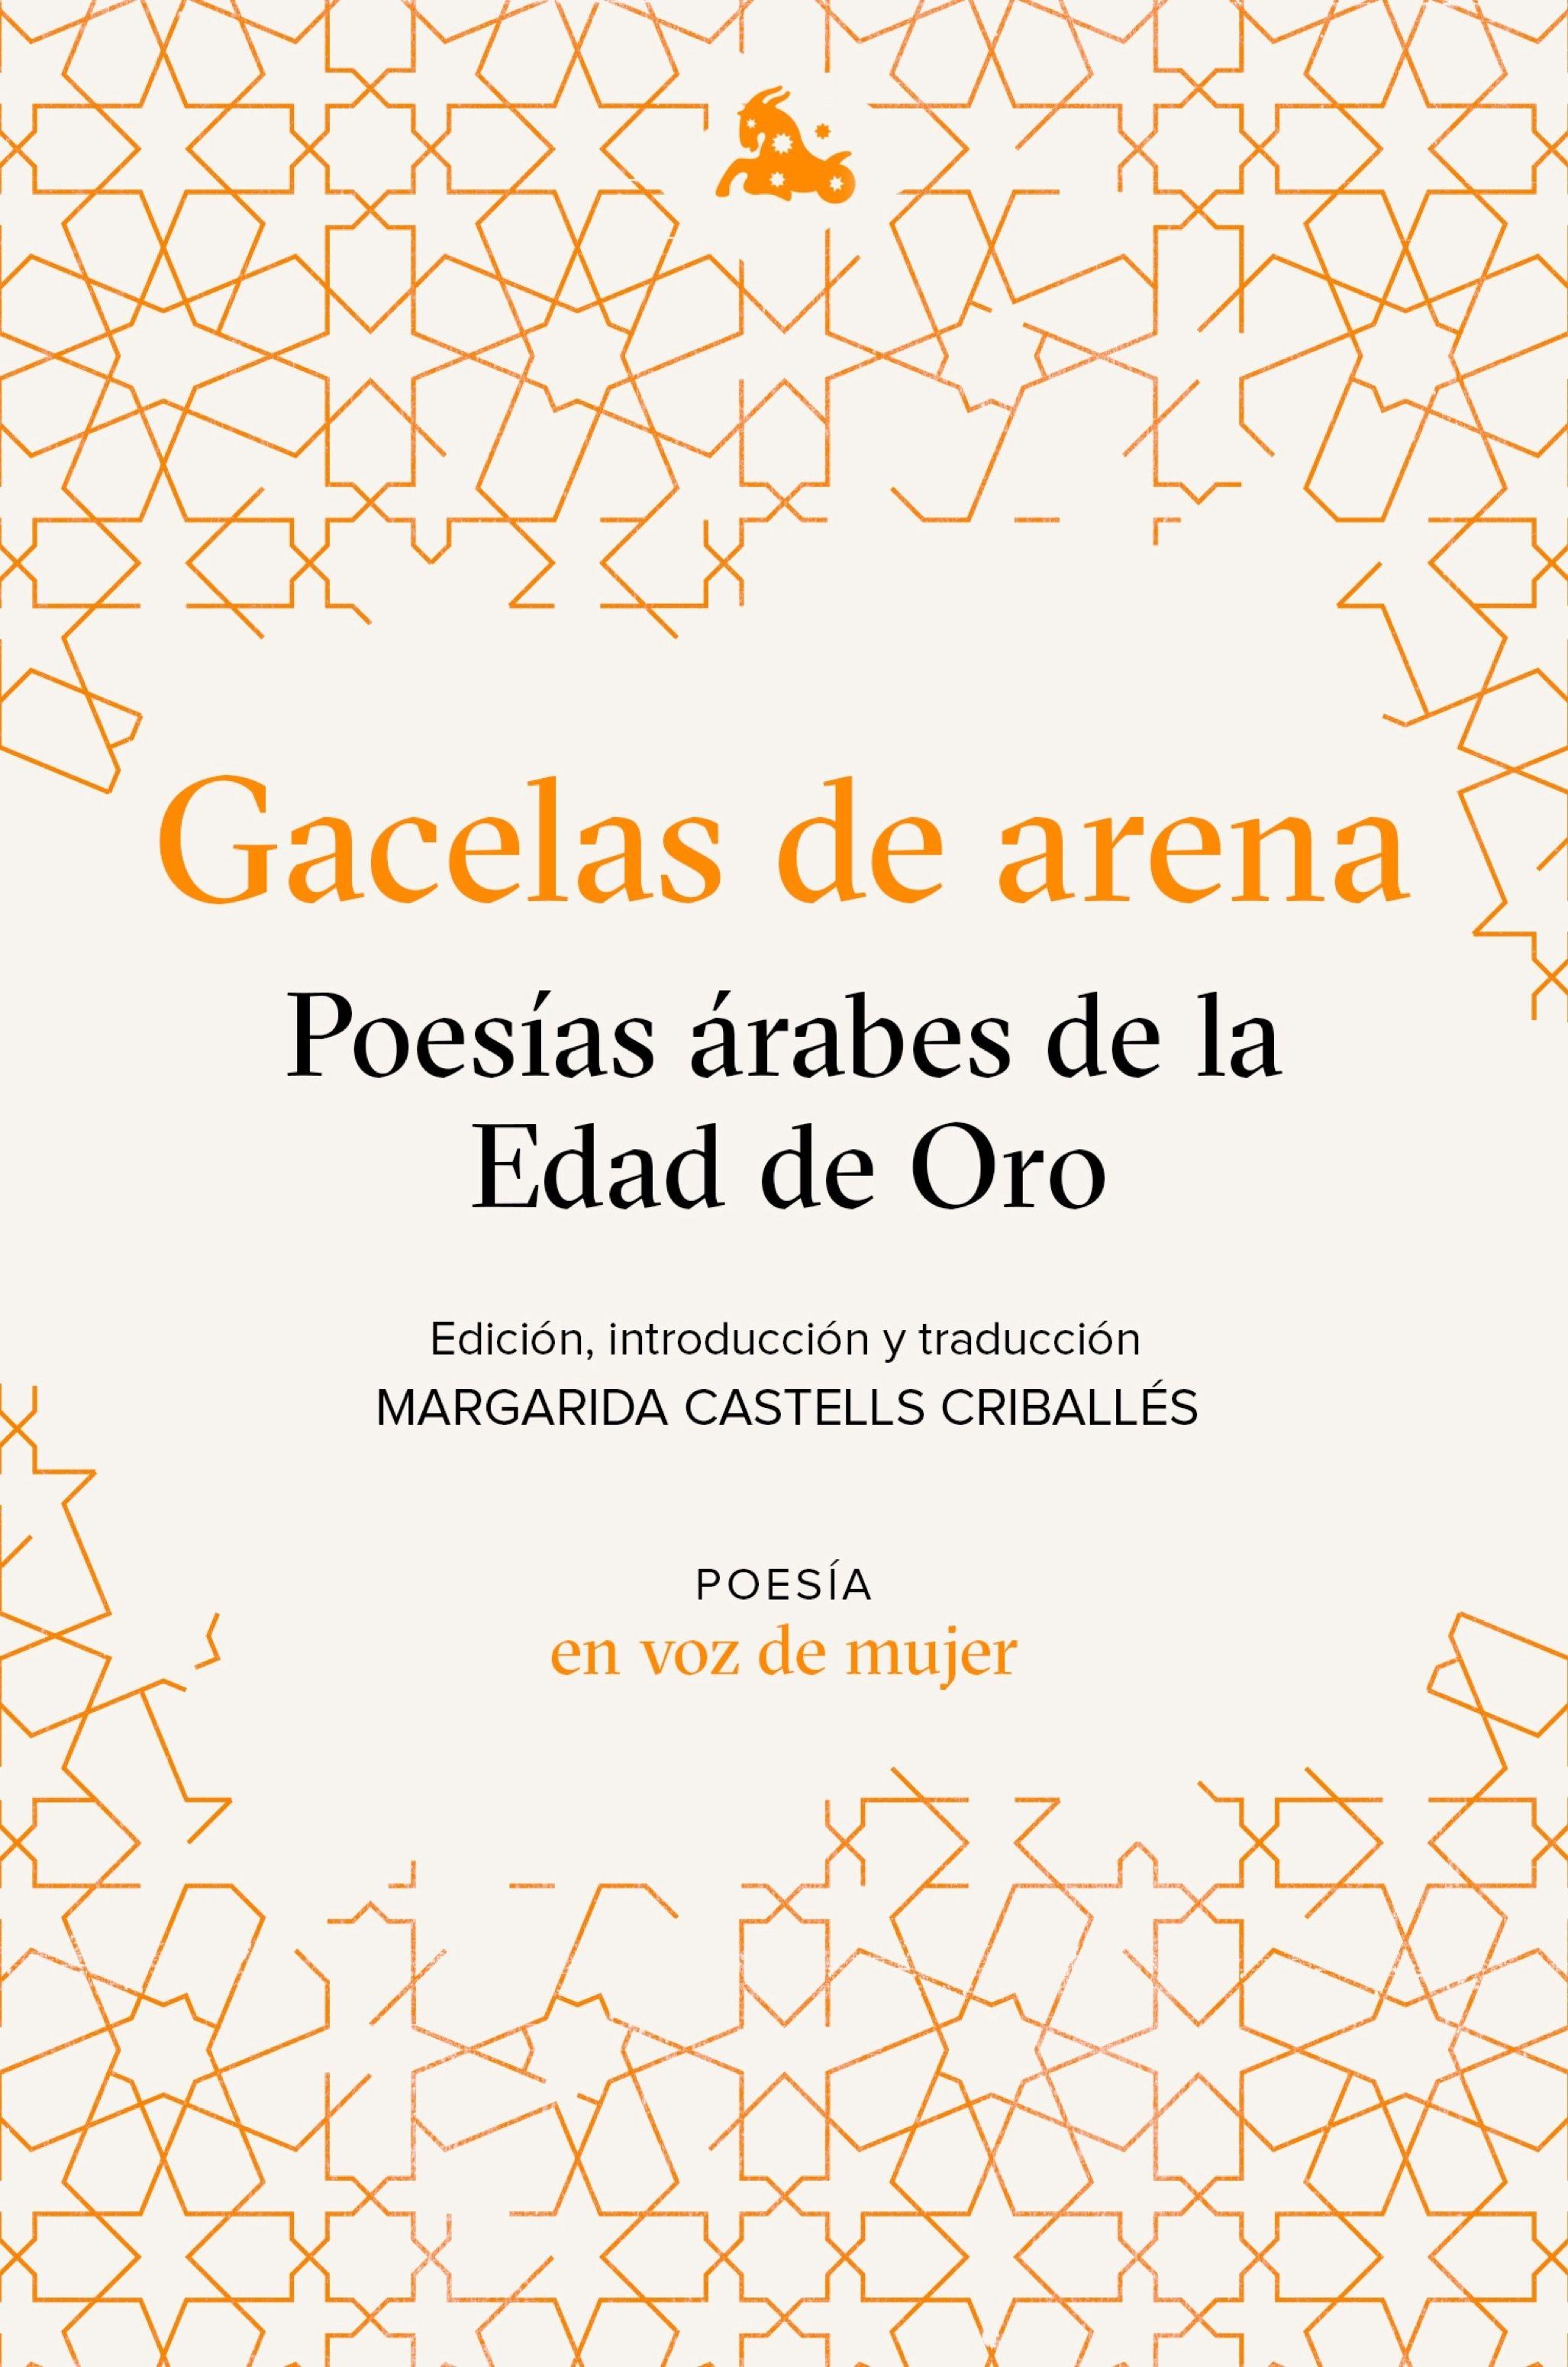 Gacelas de arena: Poesías árabes de la Edad de Oro "Edición, introducción y traducción a cargo de Margarida Castells"